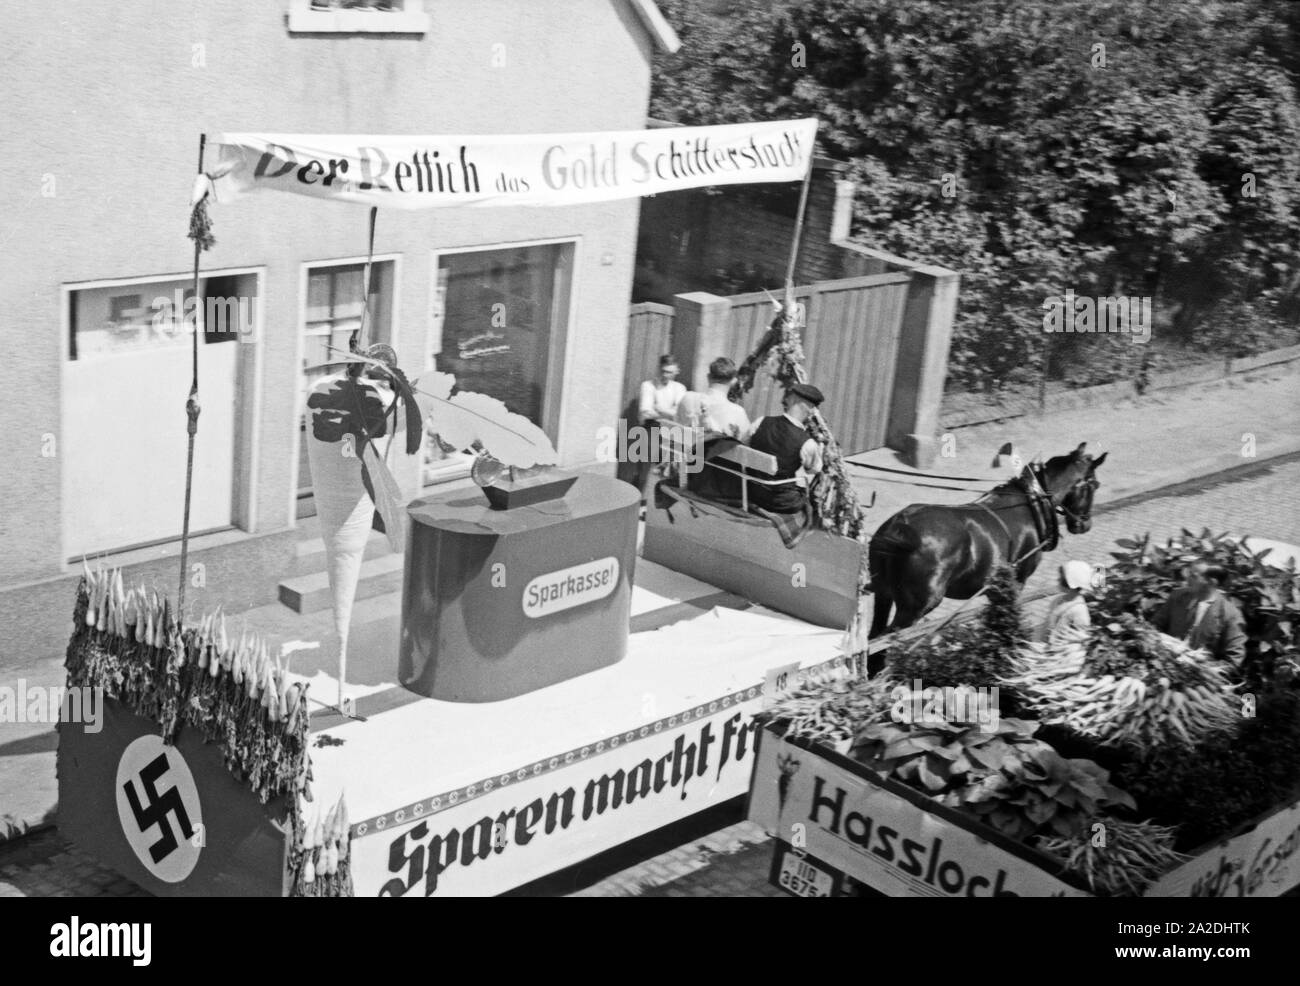 Auch die Sparkasse hat einen Motivwagen im Festumzug beim Rettichfest in Schifferstadt, Deutschland 1930er Jahre. The Sparkasse provident bank also has its parade float at the pageant of the annual radish fair at Schifferstadt, Germany 1930s. Stock Photo